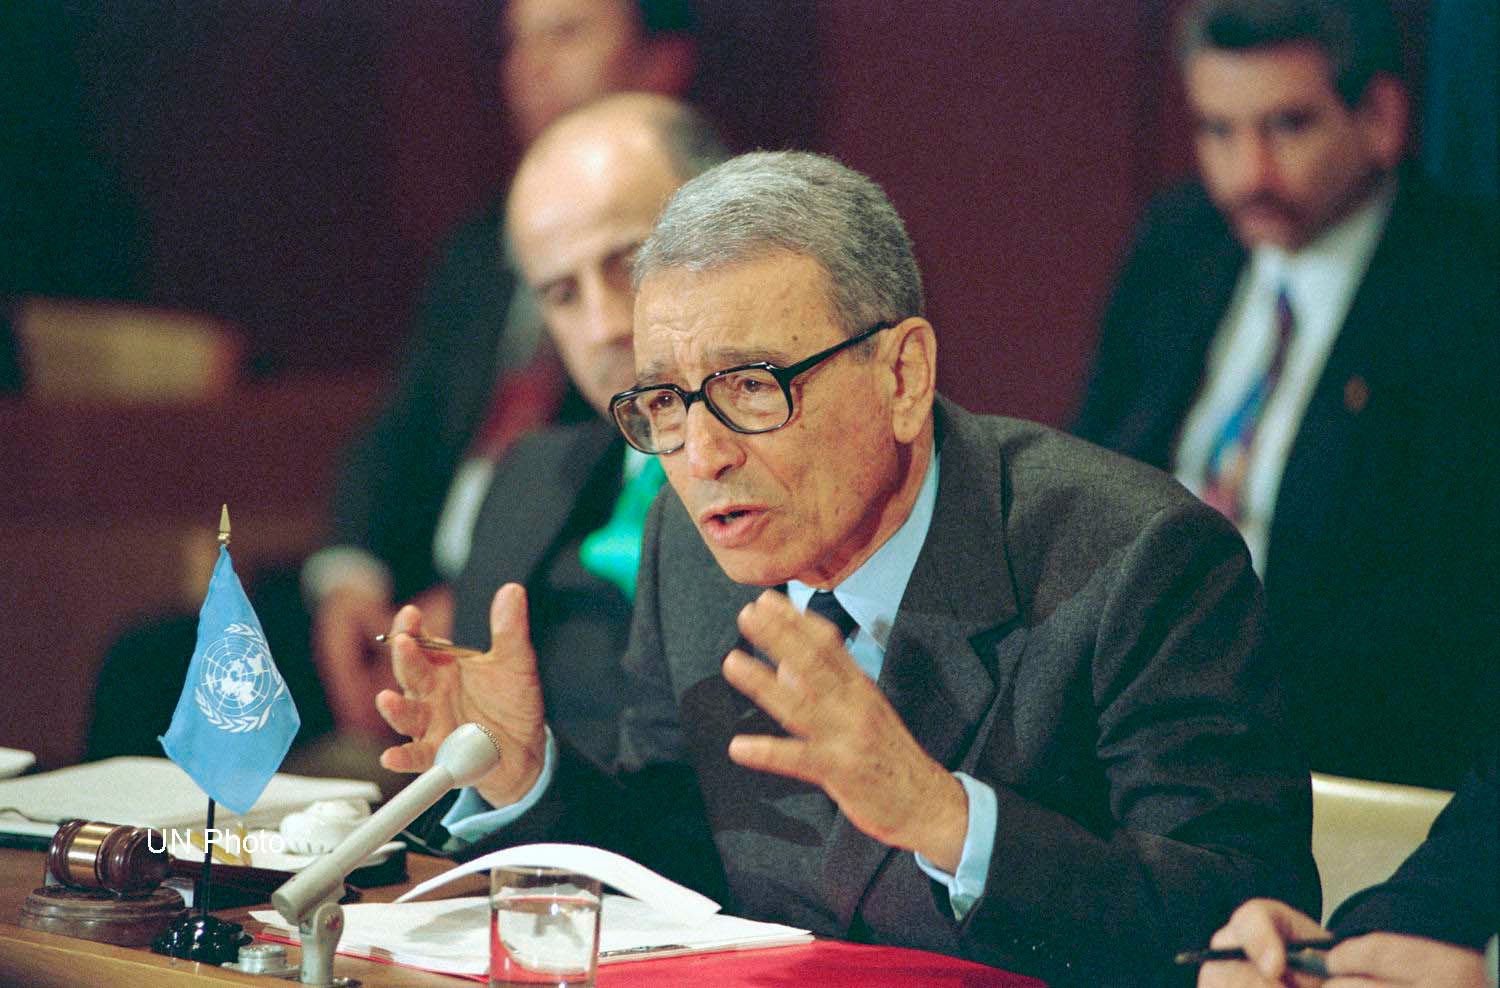 Boutros Boutros-Ghali, ici en 1994, fut secrétaire général de l'ONU de 1992 à 1996. Il est décédé à l'âge de 93 ans. (Photo: Flickr/United Nations/CC BY-NC-ND 2.0)